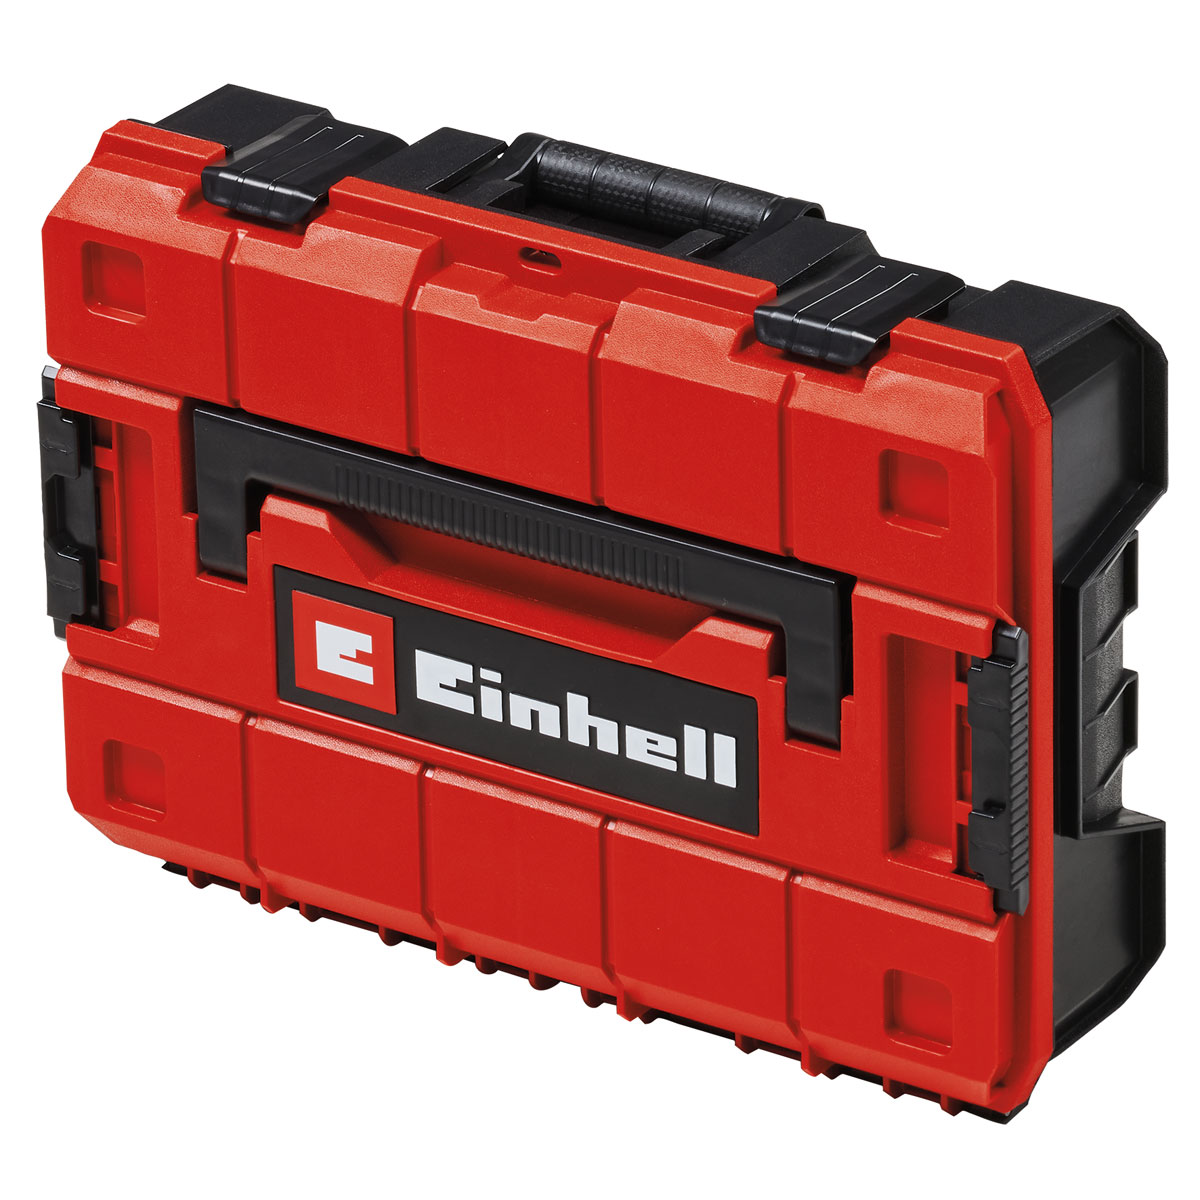 Einhell Elektrowerkzeug-Box L70/35 25 x 70 x 35 cm rot-schwarz | 25x70x35 |  139298